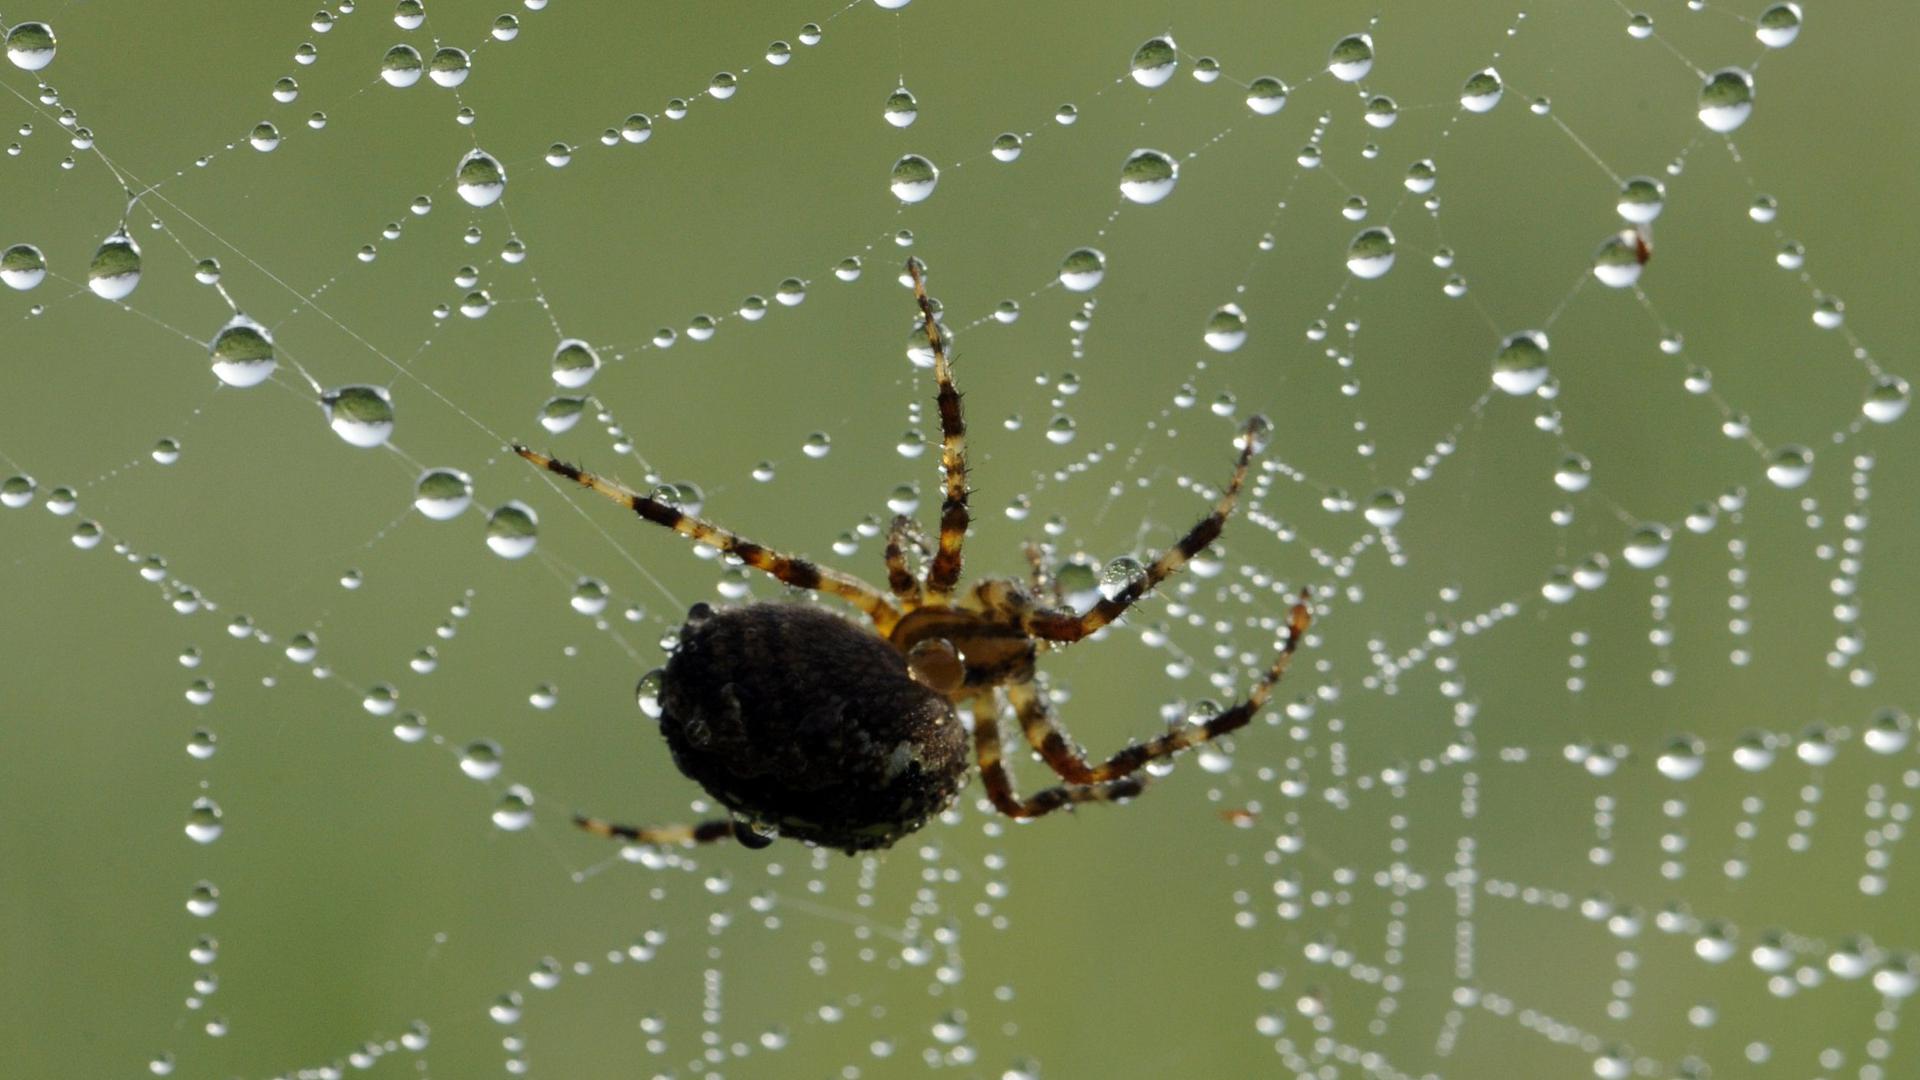 Eine Spinne sitzt am Donnerstag (23.09.2010) bei Geisingen (Landkreis Tuttlingen) in einem Spinnennetz, das mit Tautropfen überzogen ist. Foto: Patrick Seeger dpa/lsw +++(c) dpa - Bildfunk+++